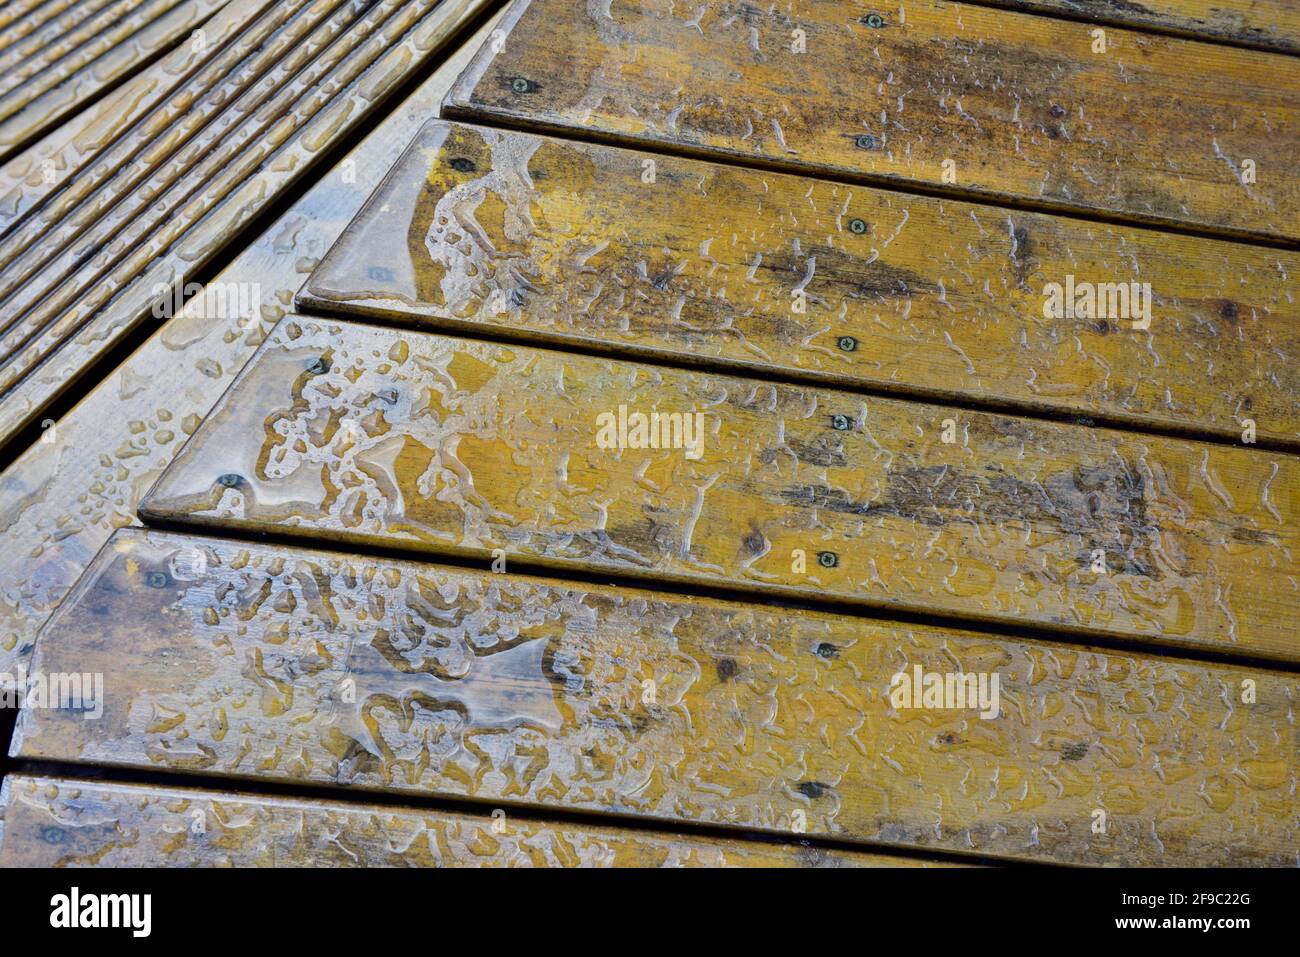 Bading d'acqua su tavole di legno in legno lubrificato. Superiore con la parte superiore piatta che scende al gradino con le scanalature Foto Stock